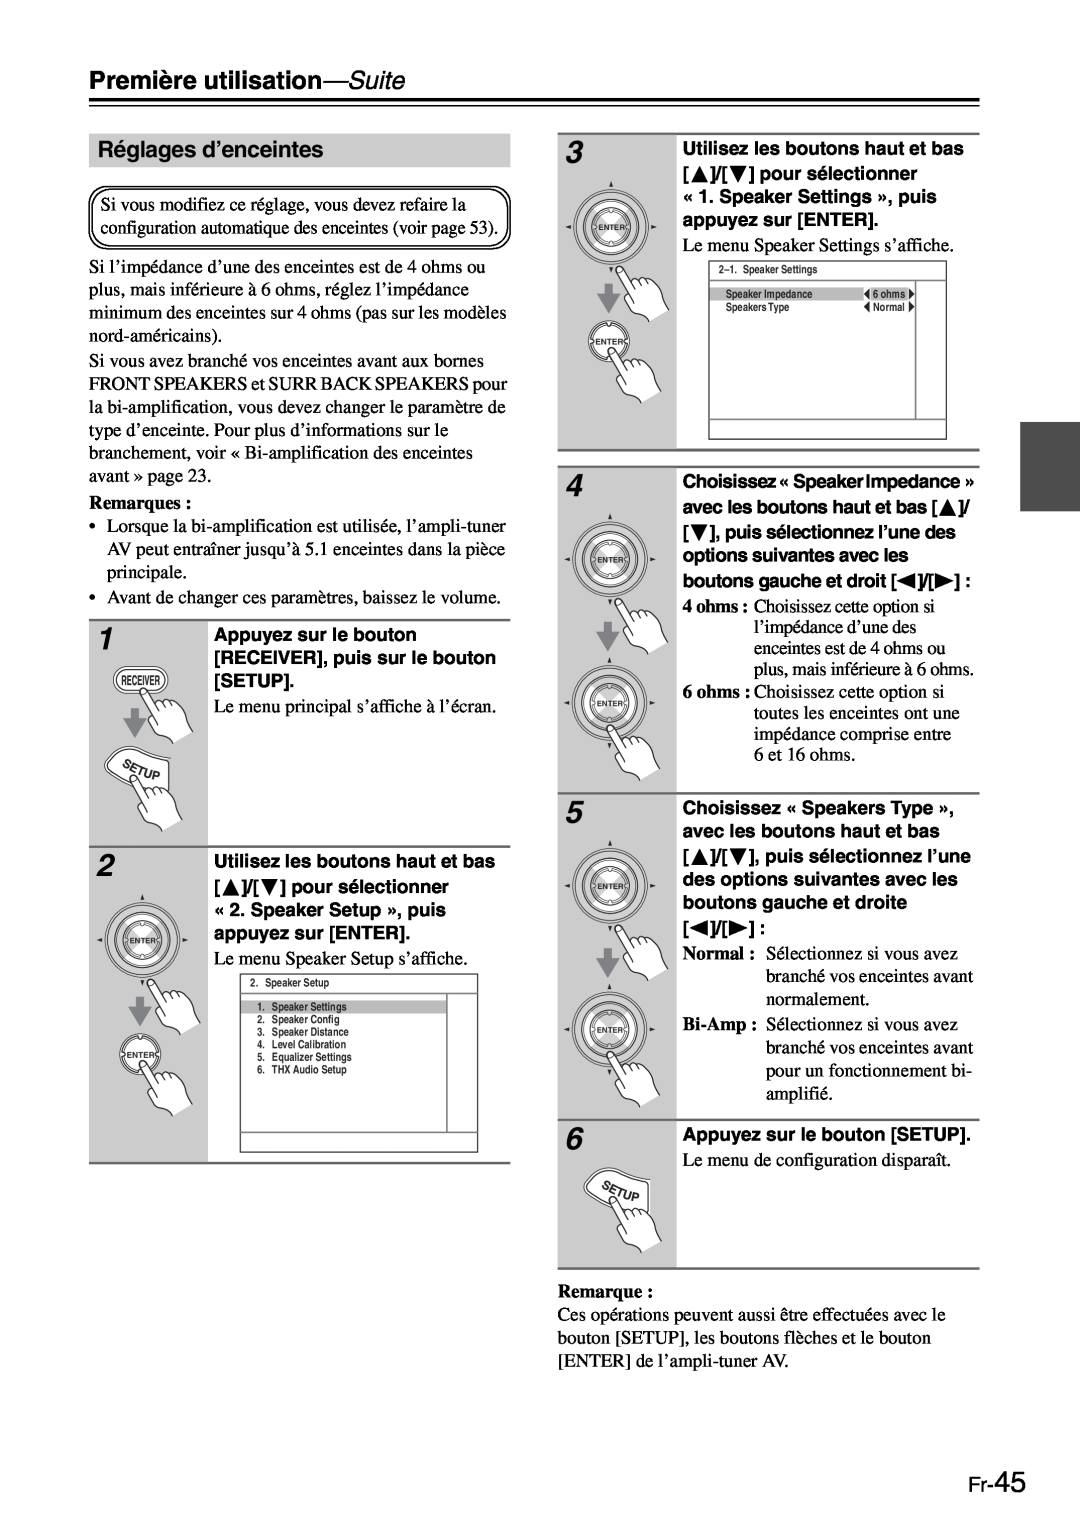 Onkyo TX-SR705 manual Première utilisation—Suite, Réglages d’enceintes, Fr-45, Remarques 